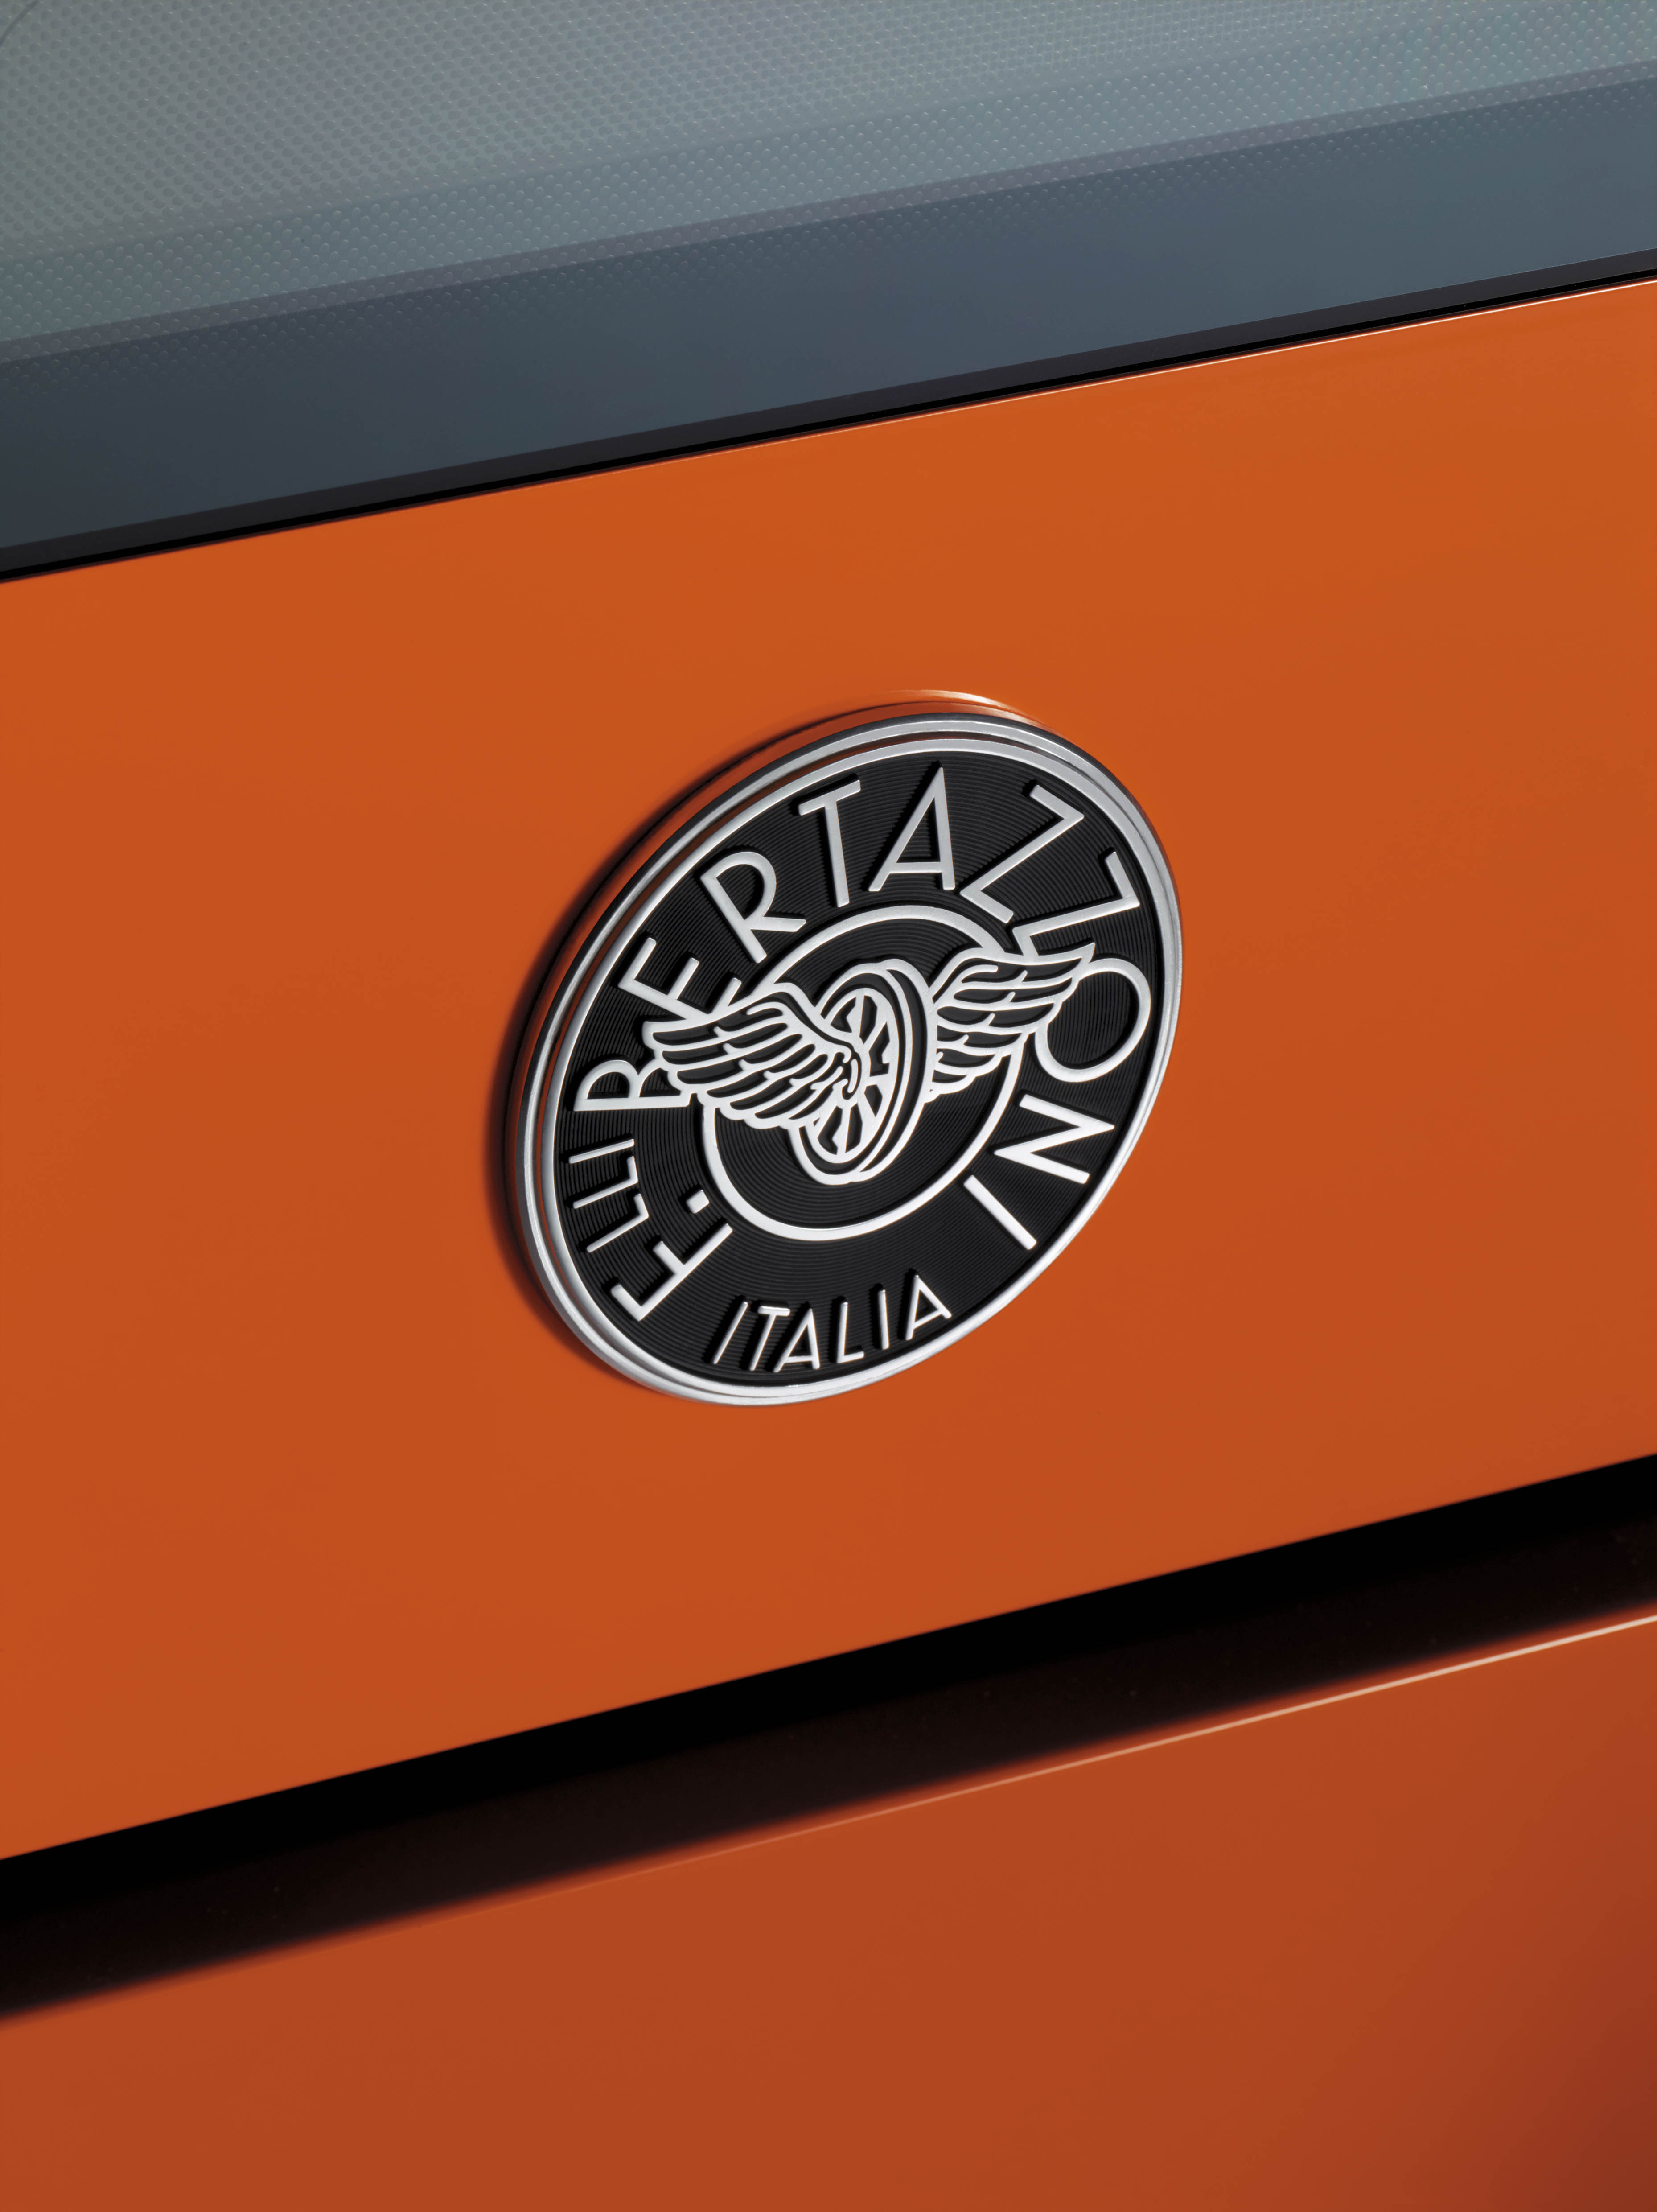 Foto: orange oven door